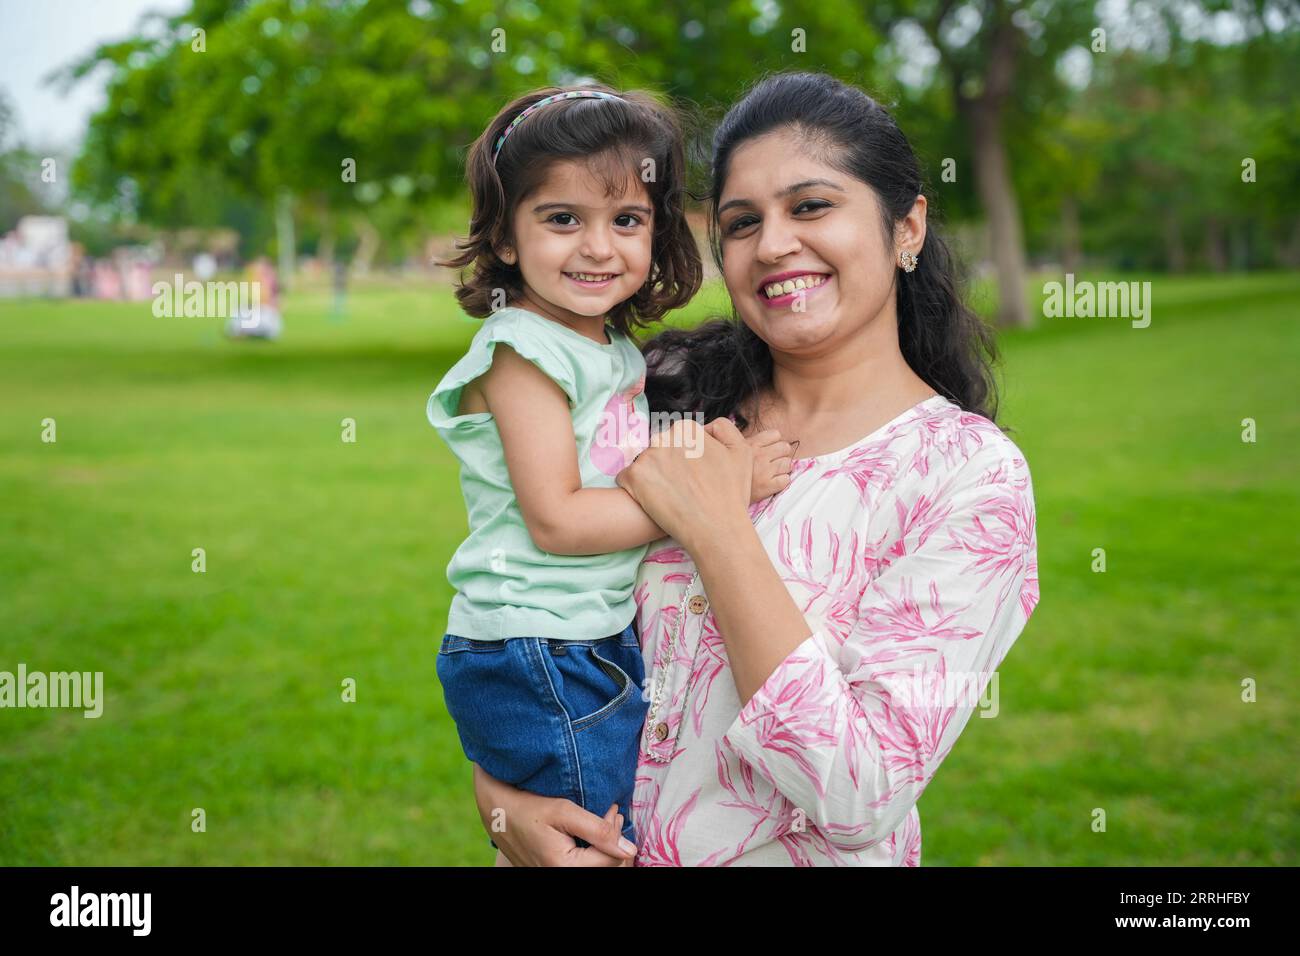 Porträt der glücklichen jungen indischen Mutter und der süßen kleinen Mädchentochter im Sommerpark oder Garten. Stockfoto